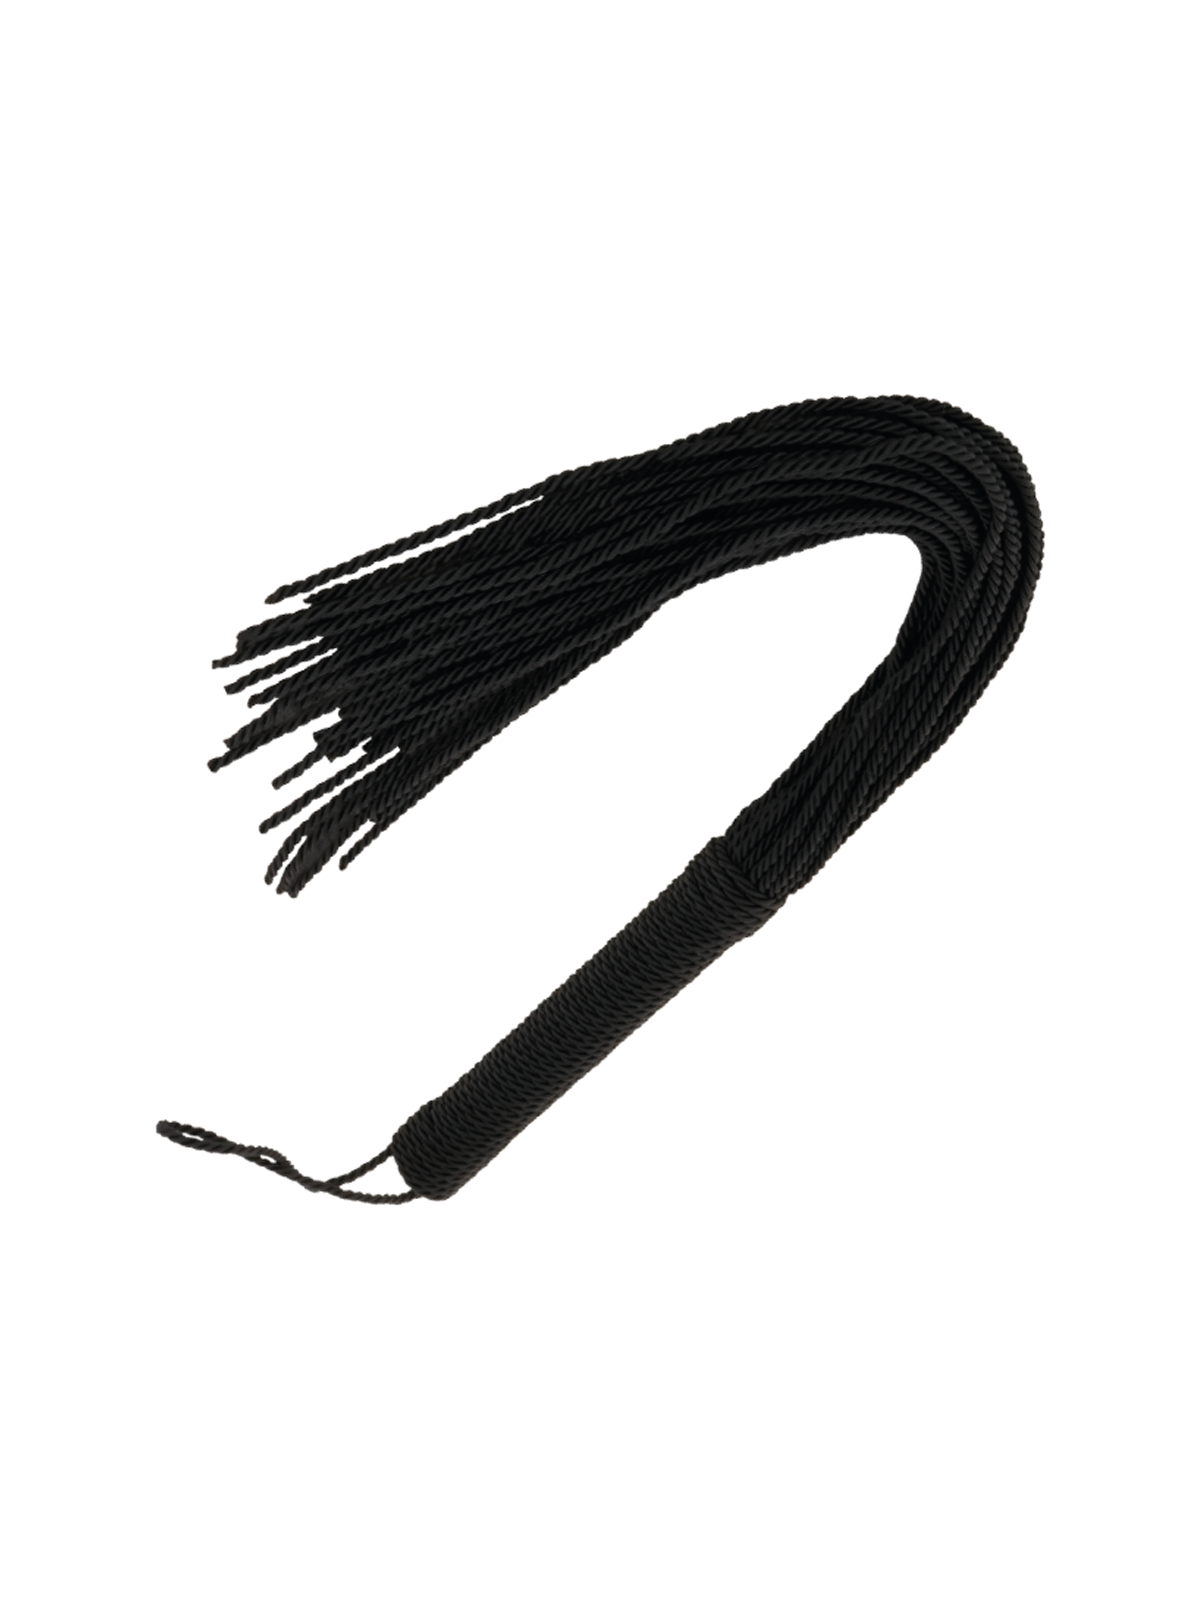 Darkness Látigo Bondage Negro 50 cm - Comprar Látigo sexual Darkness - Látigos sexuales (1)